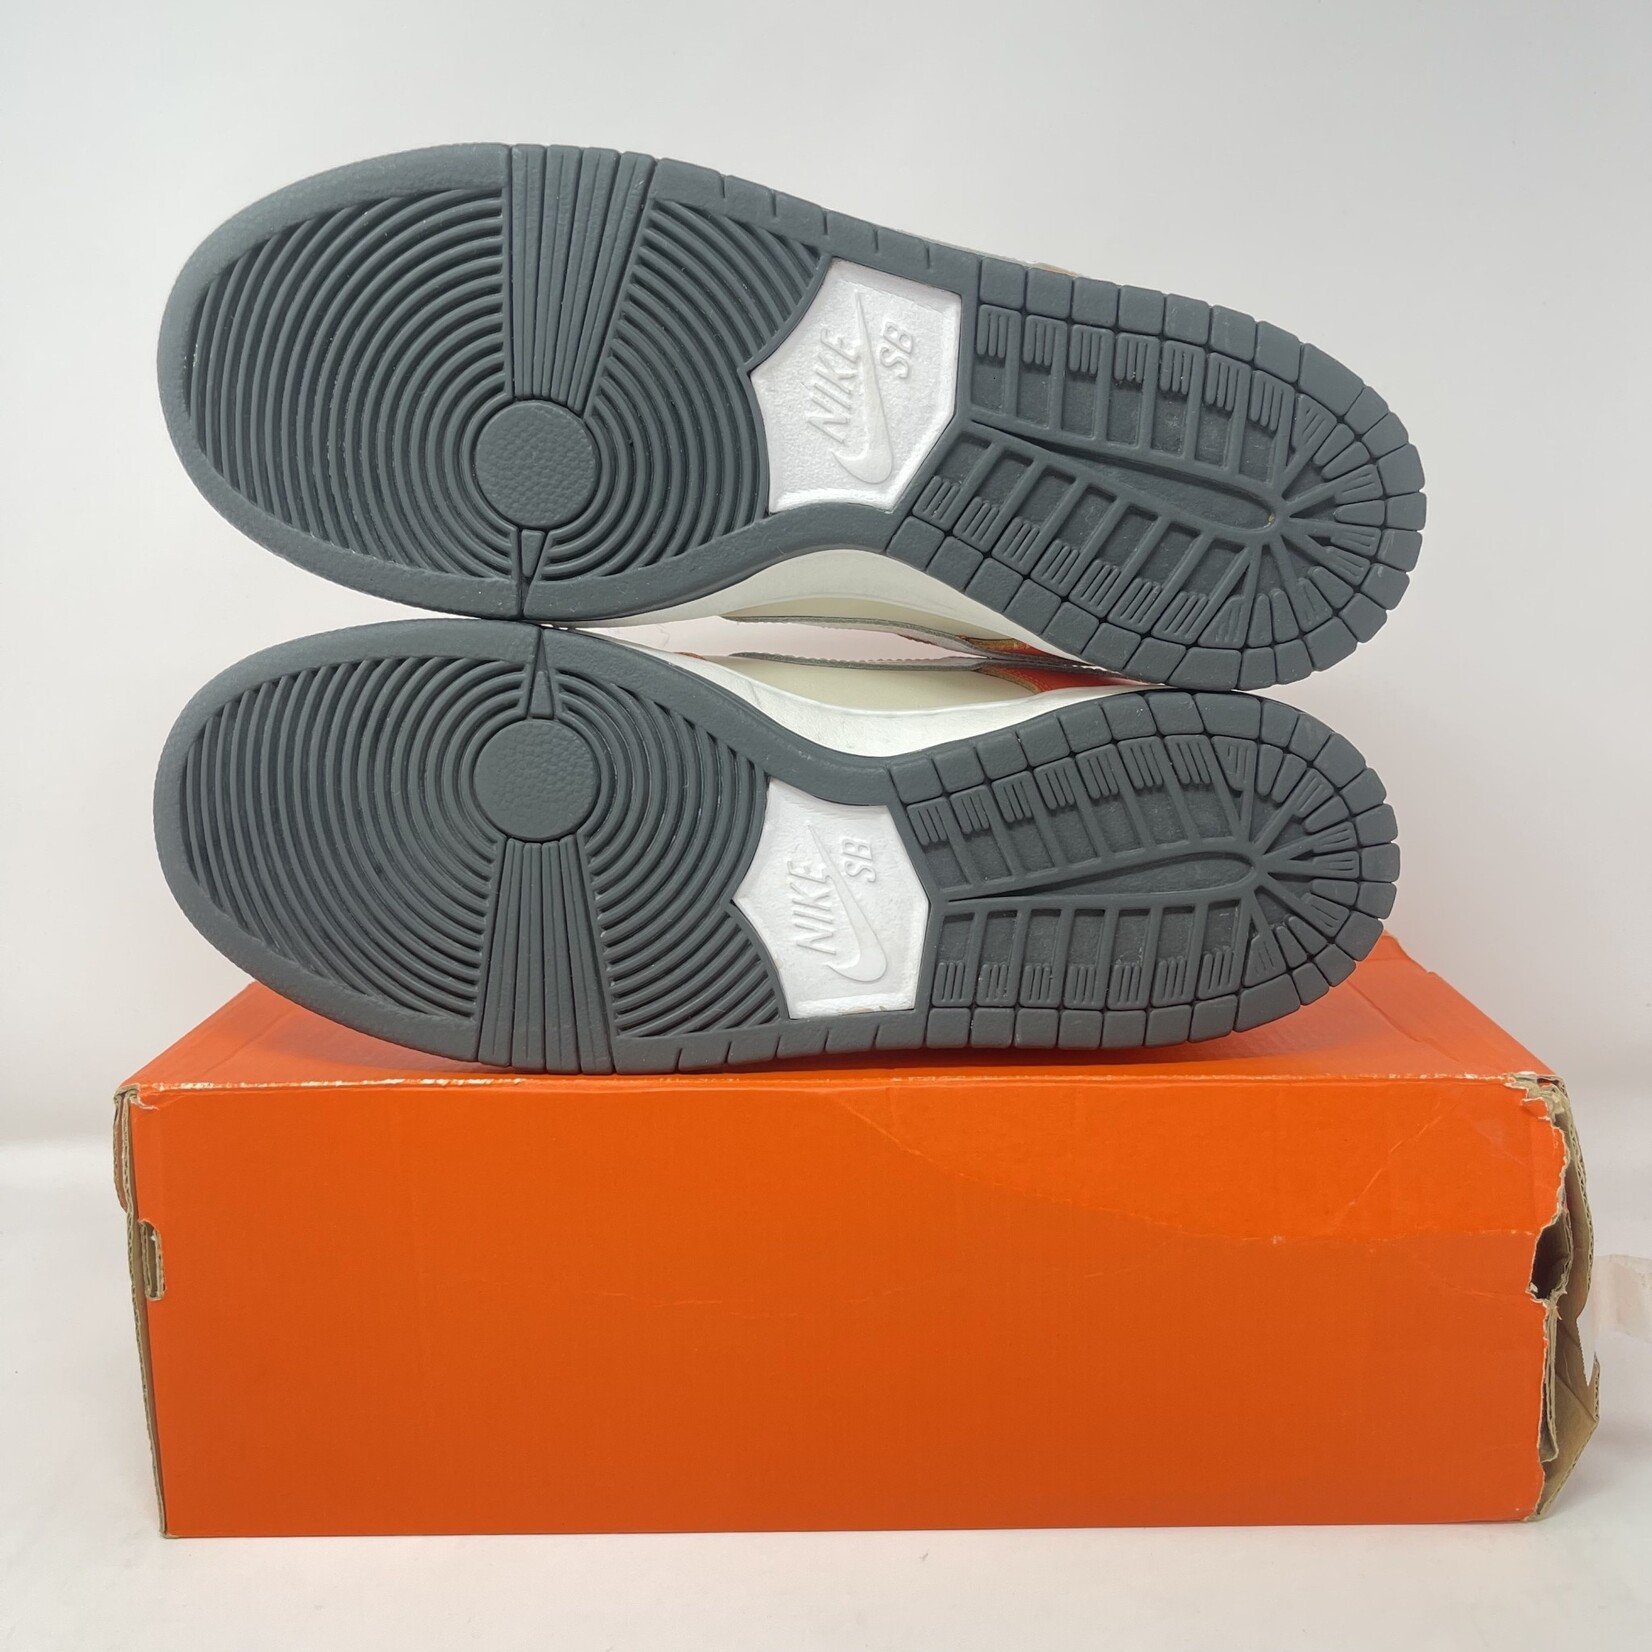 Nike Nike SB Dunk Low Orange Box